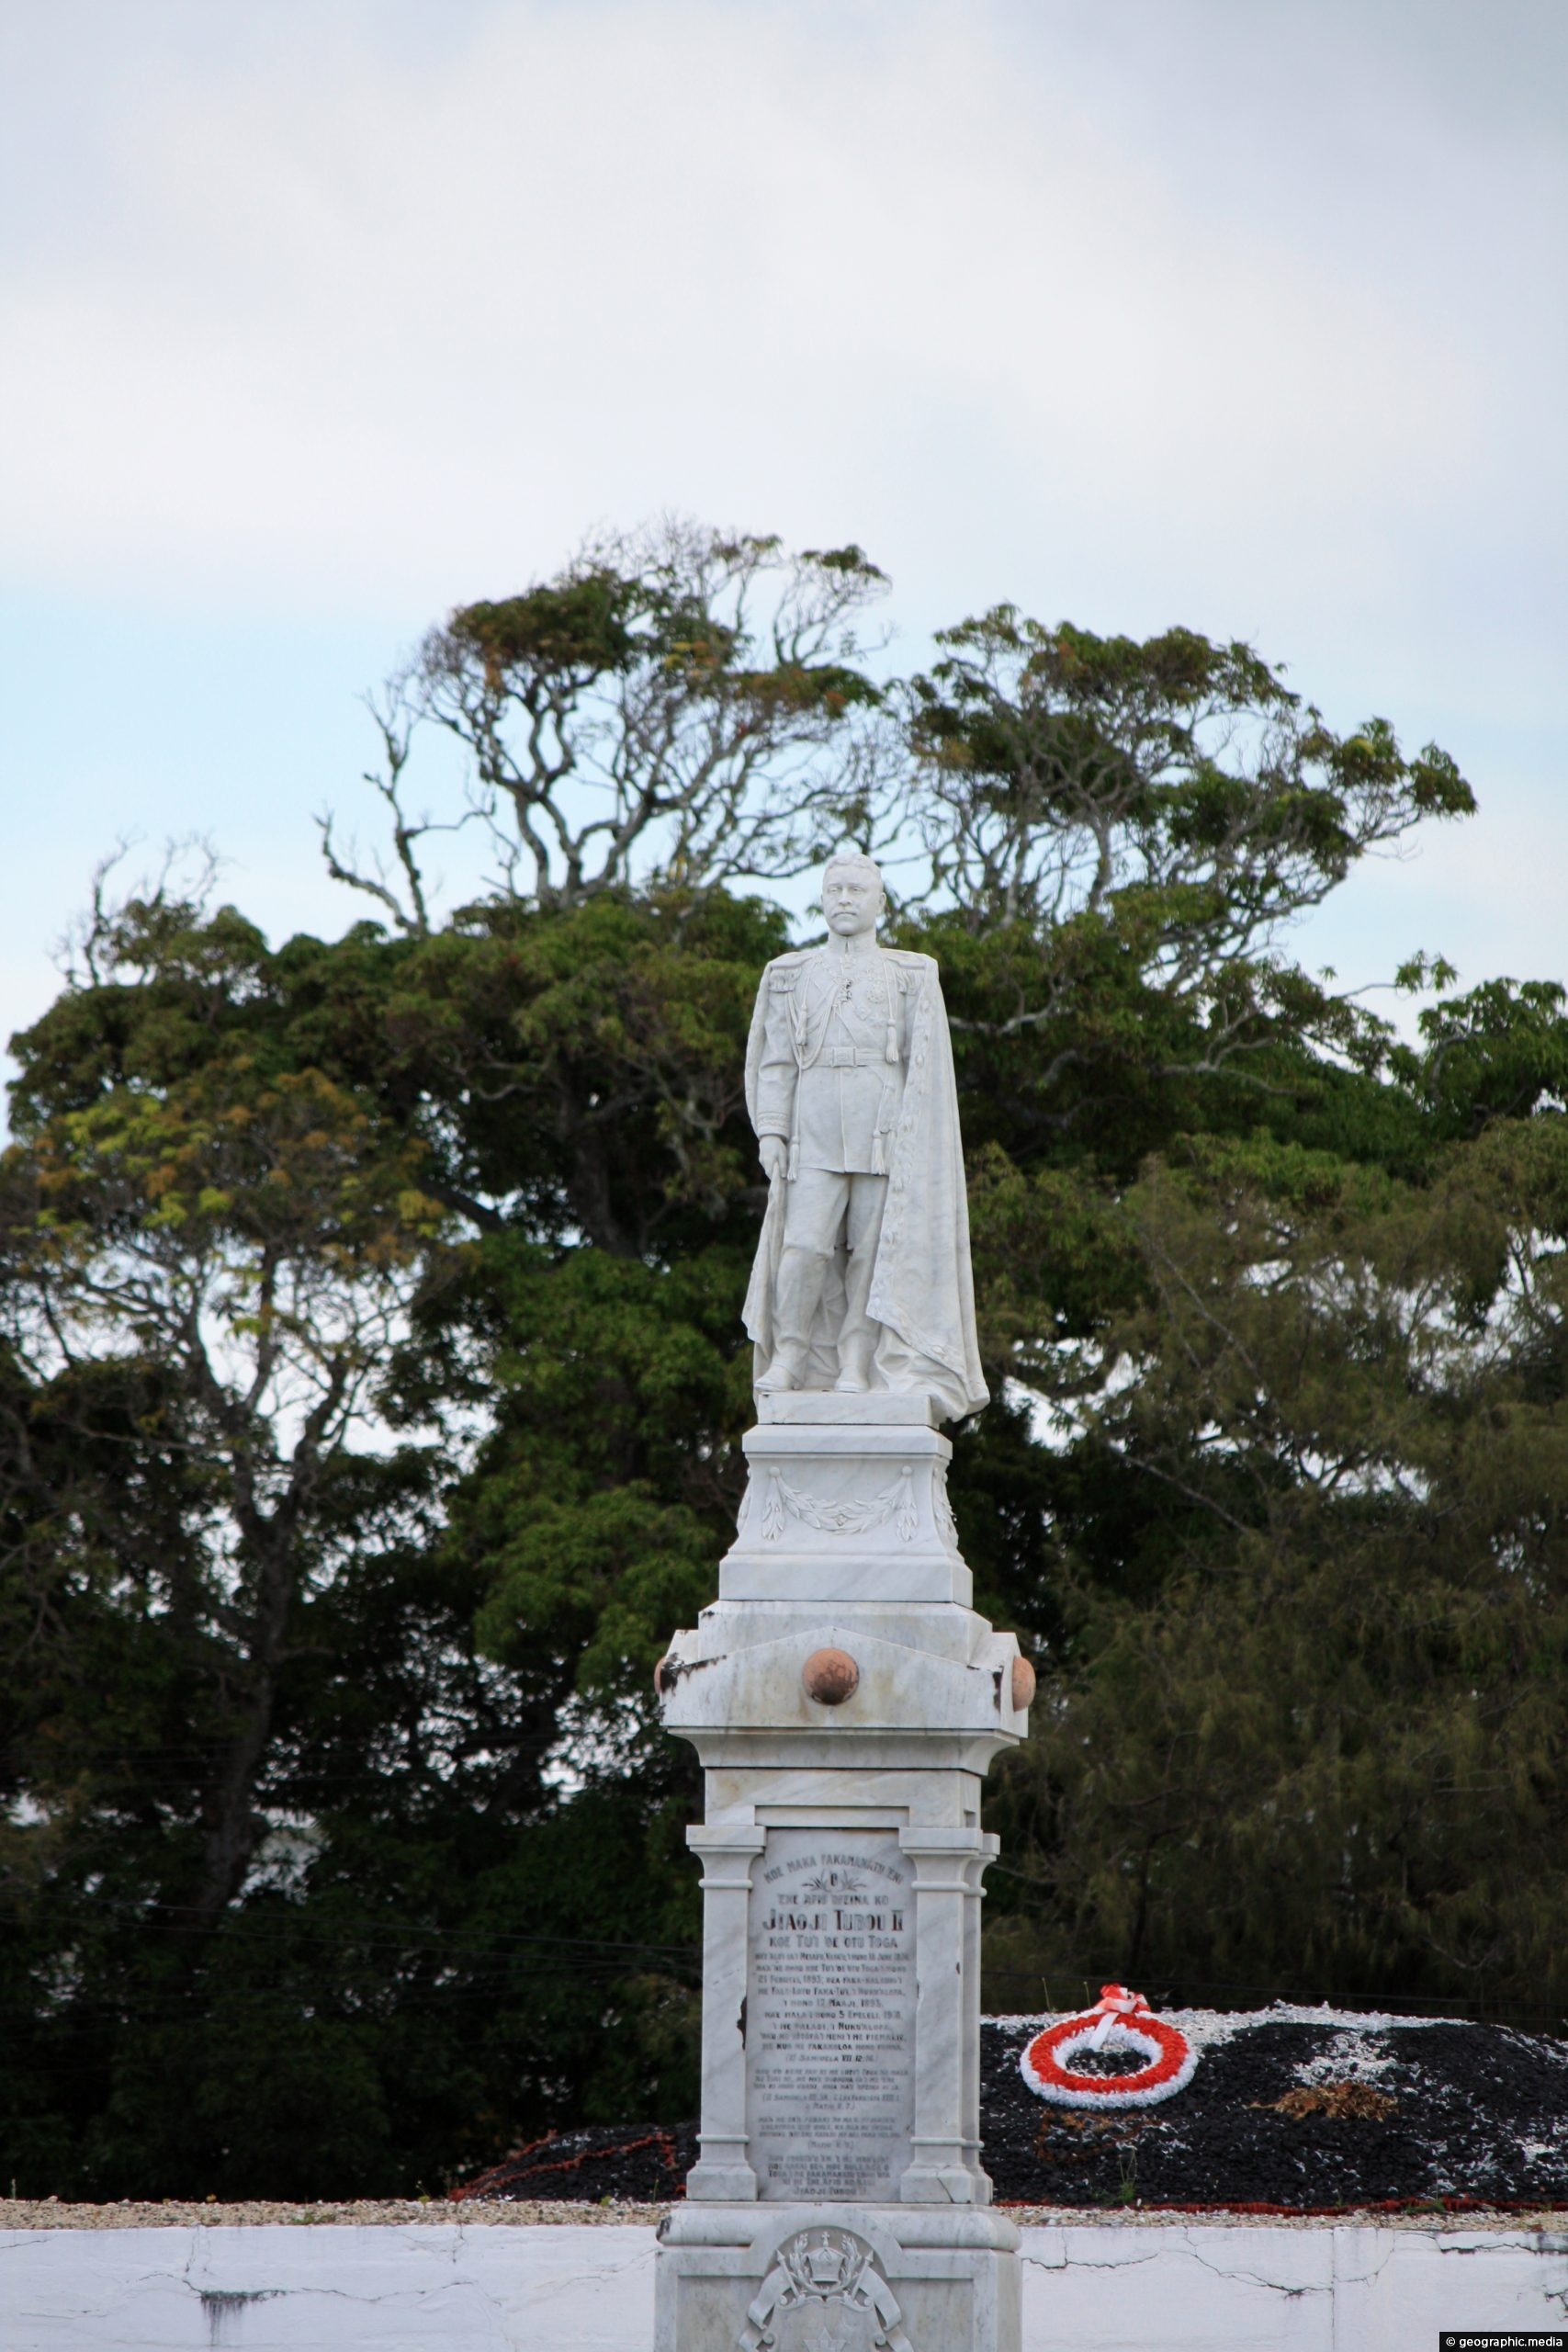 The Royal Tomb of Kuini Lavenia in Nuku'alofa